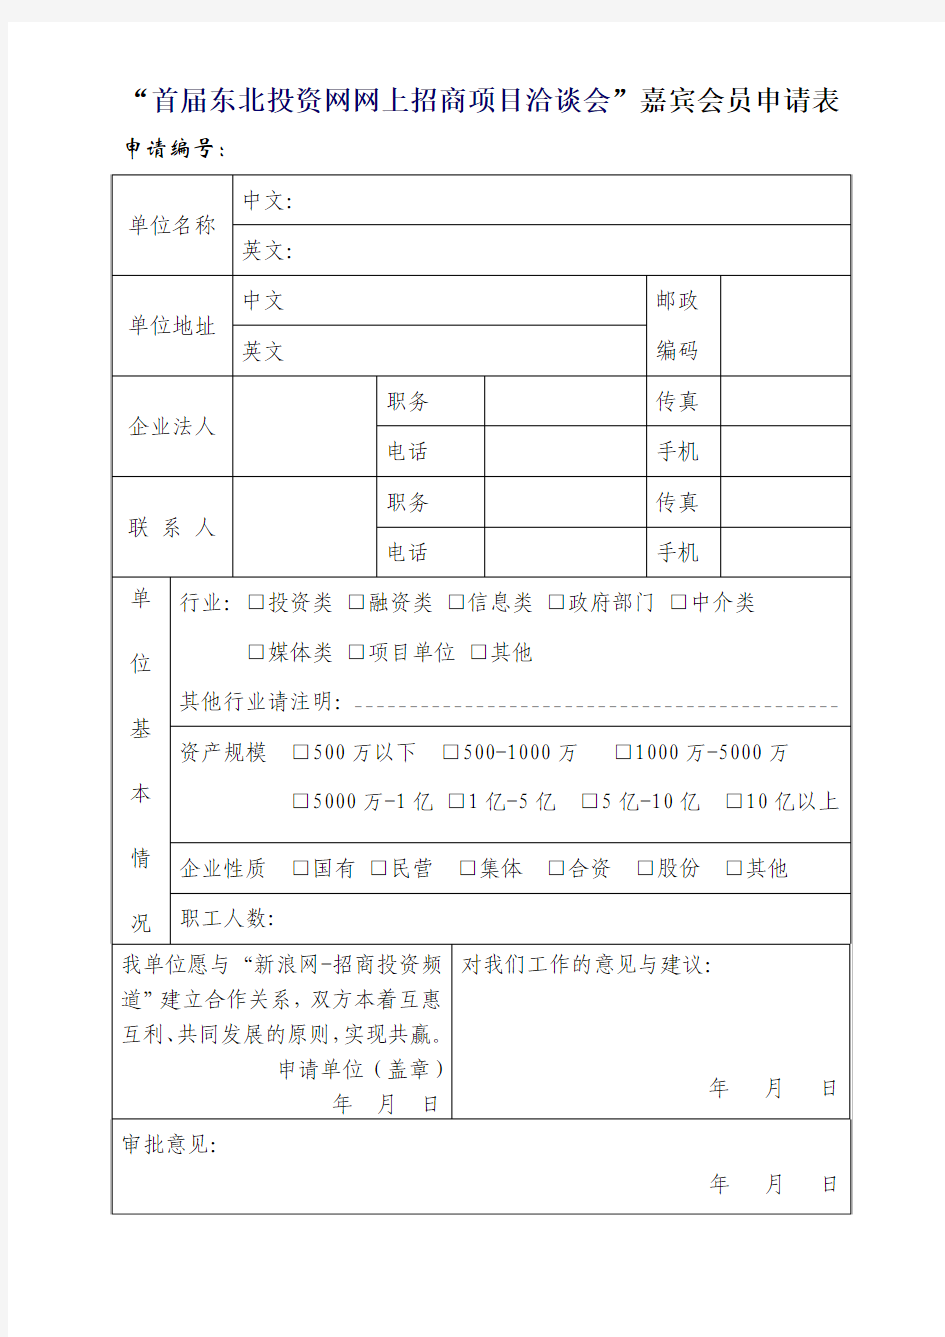 中国工艺美术协会个人会员入会申请表